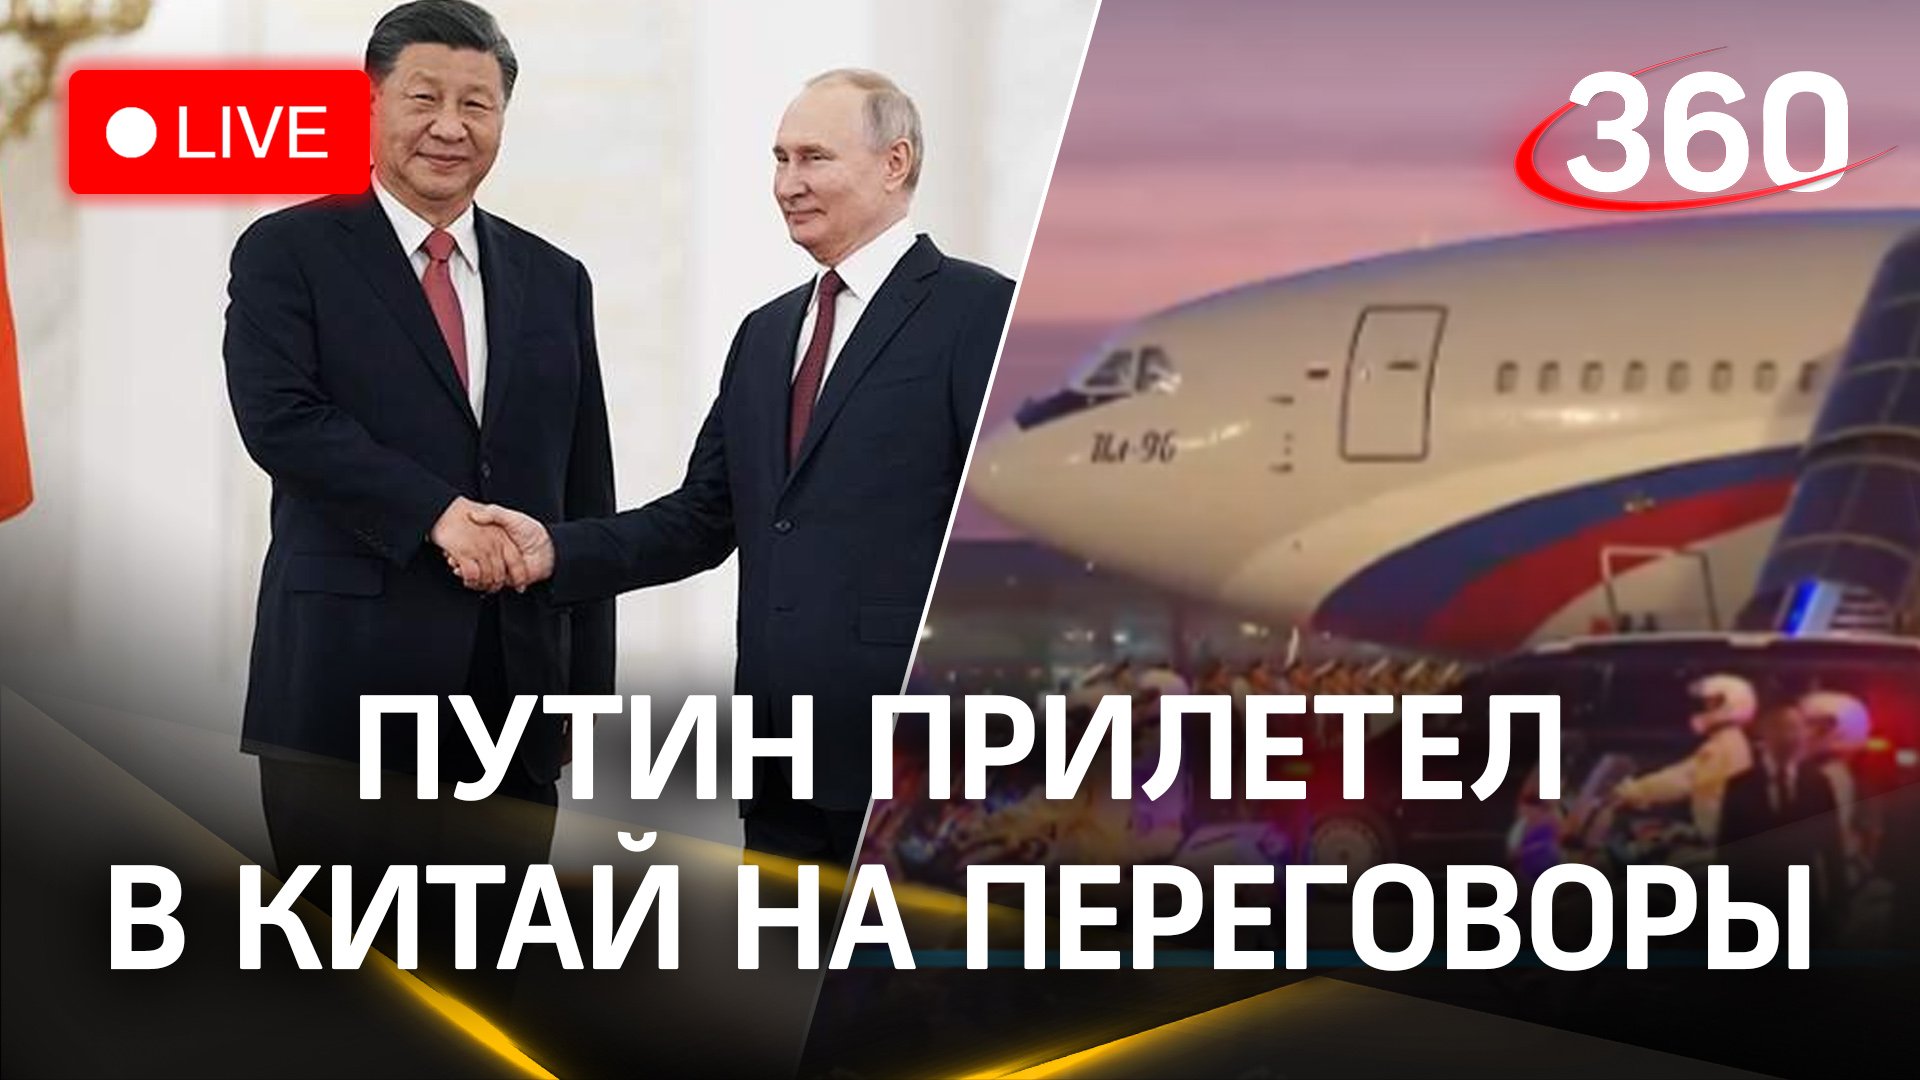 Путин прилетел в Пекин на переговоры с Си Цзиньпином. Трансляция